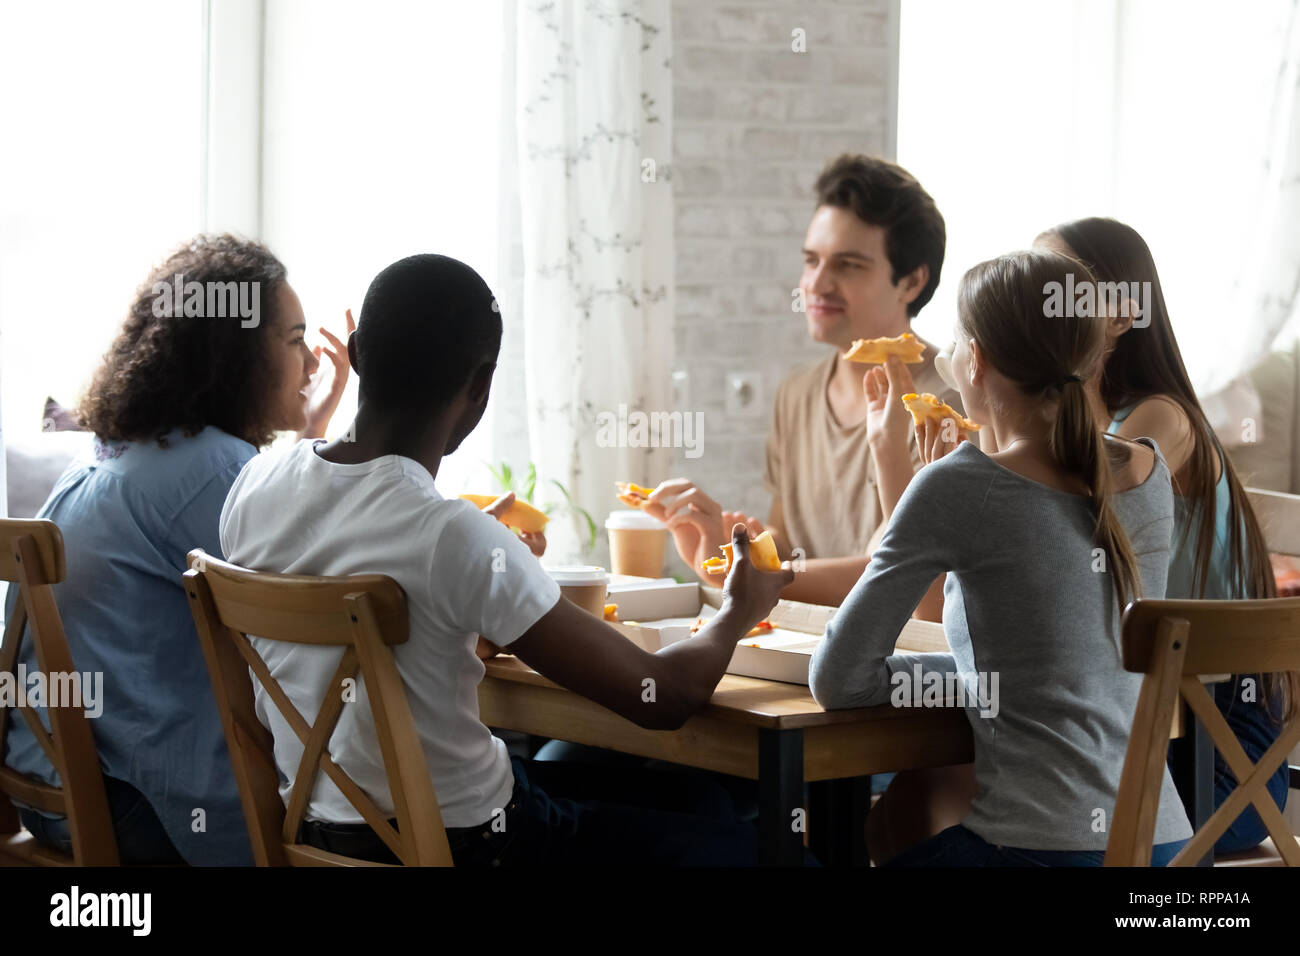 Avoir des amis multiraciale et conversation eating pizza in cafe Banque D'Images